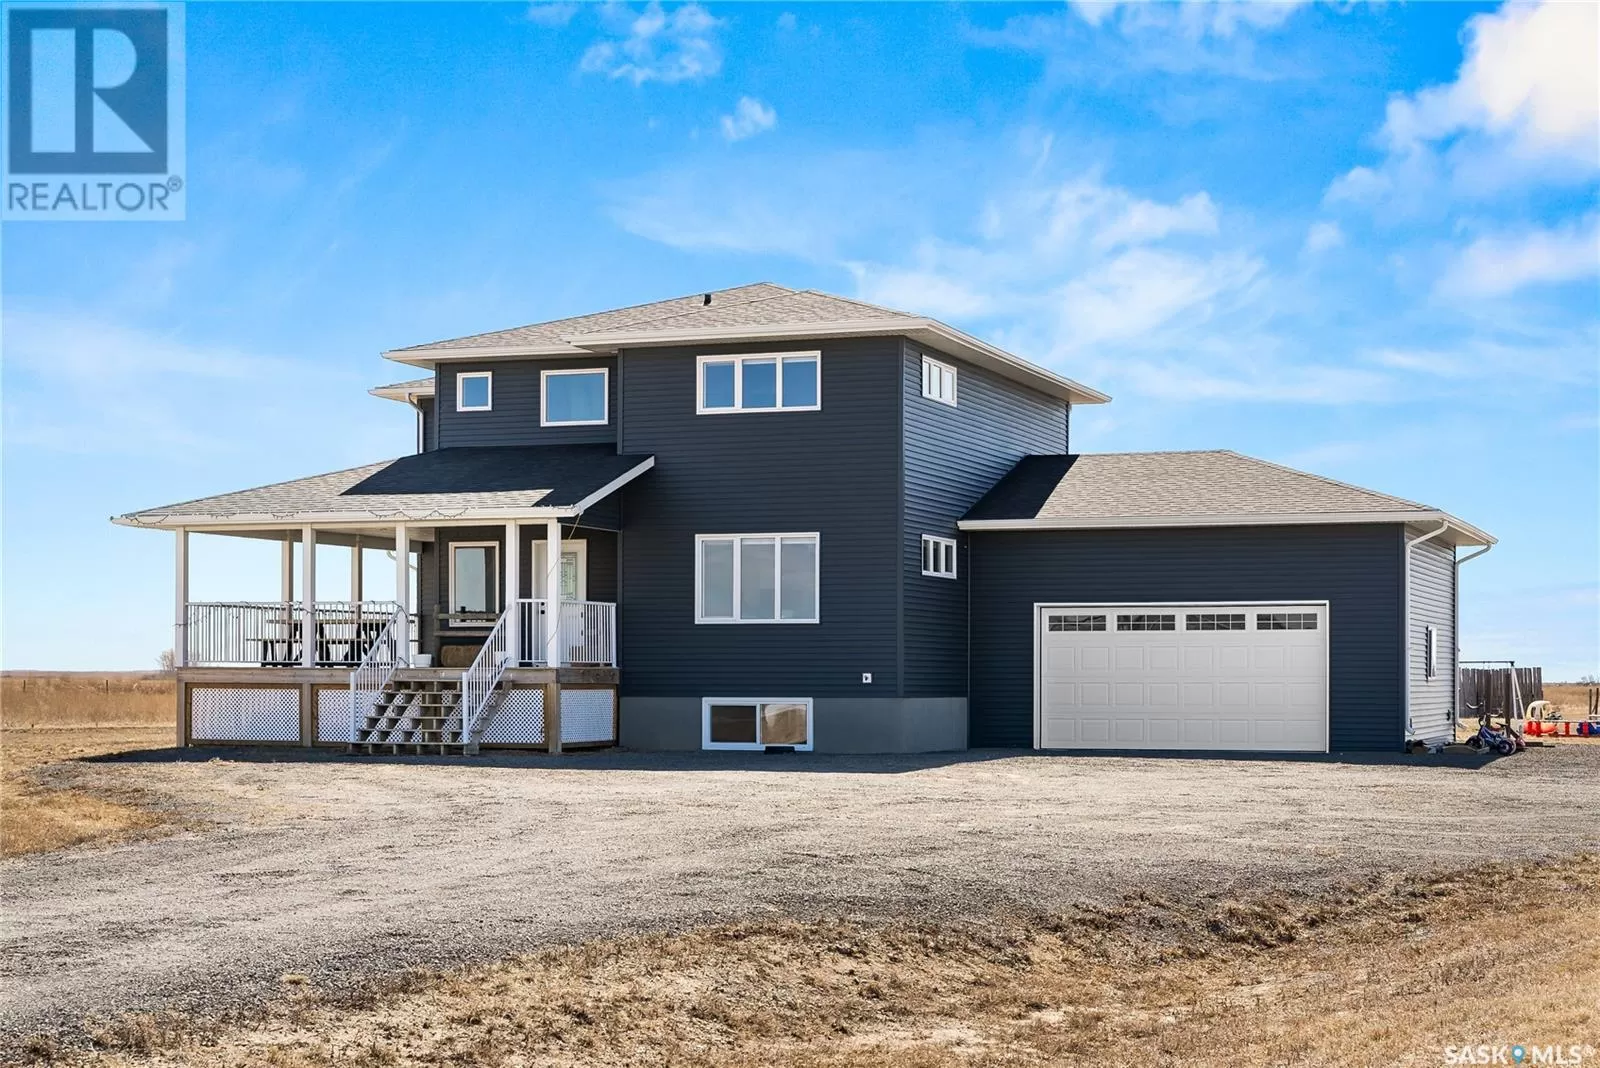 House for rent: The Monk Acreage, Edenwold Rm No. 158, Saskatchewan S4L 5B1